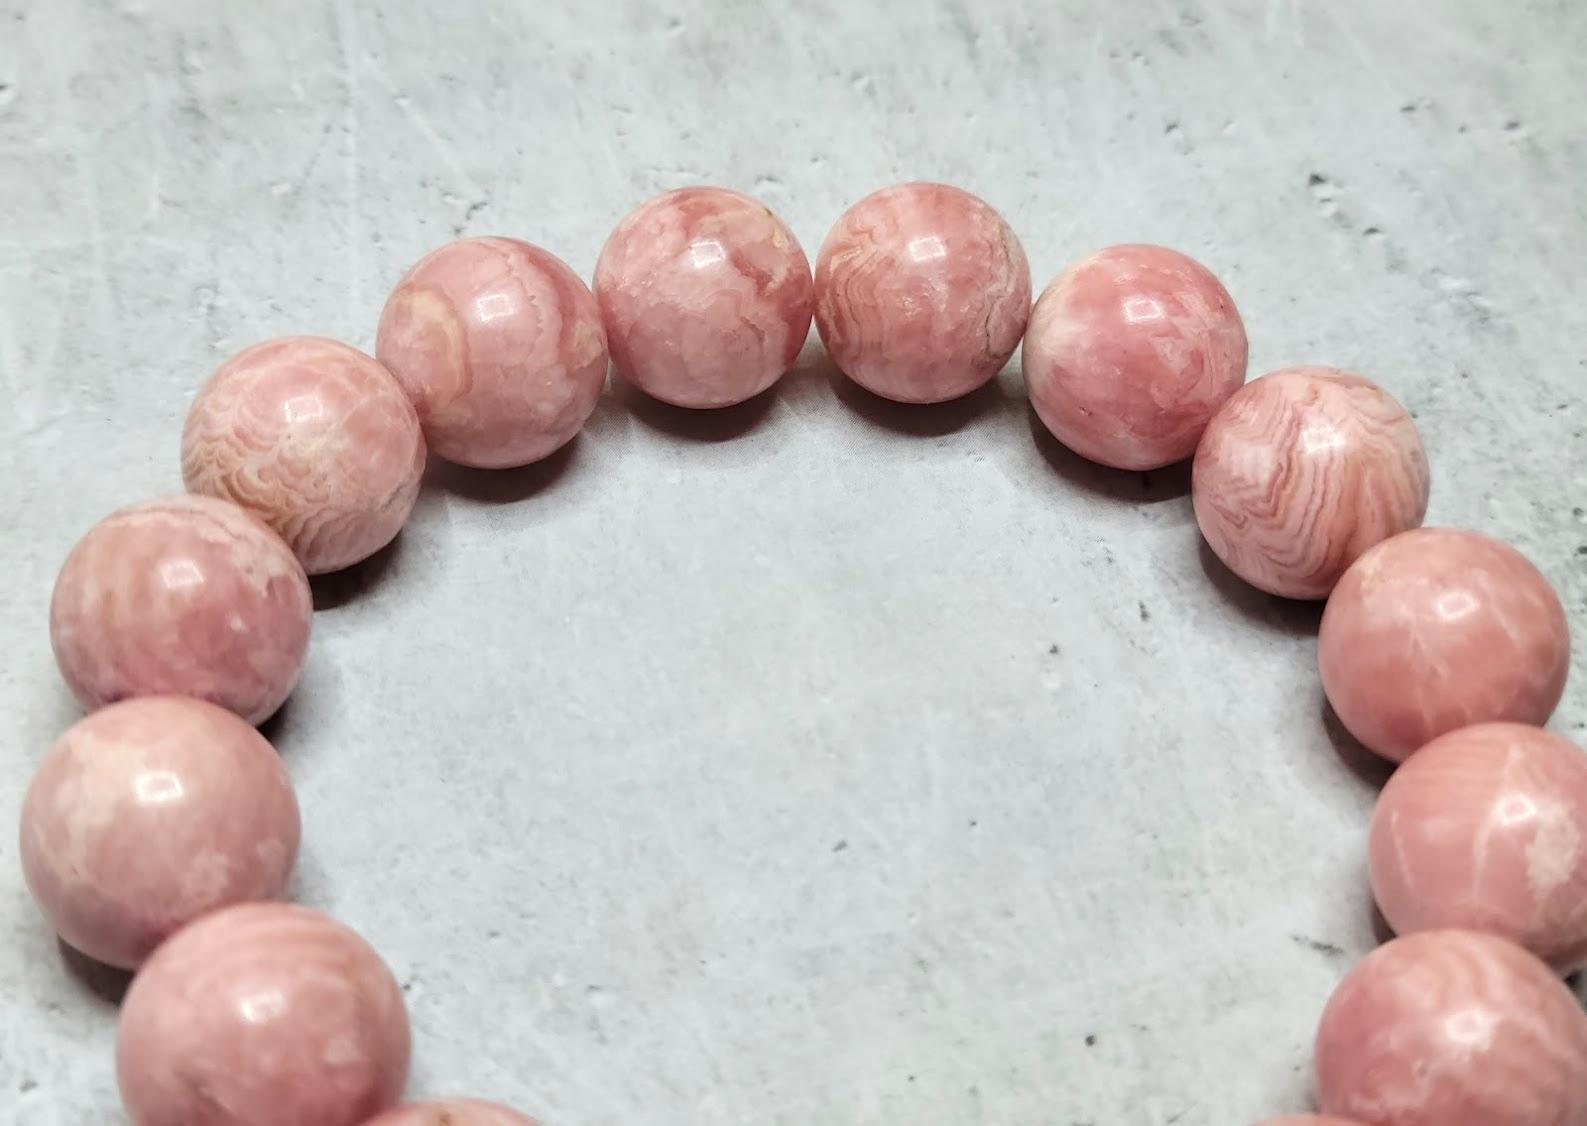 La longueur du bracelet est de 23 cm. La taille rare des perles rondes et lisses est de 14 mm.
Rhodochrosite naturelle de couleur rouge-rose. Couleur authentique, naturelle et non traitée. Qualité supérieure ! La belle, intéressante et légère